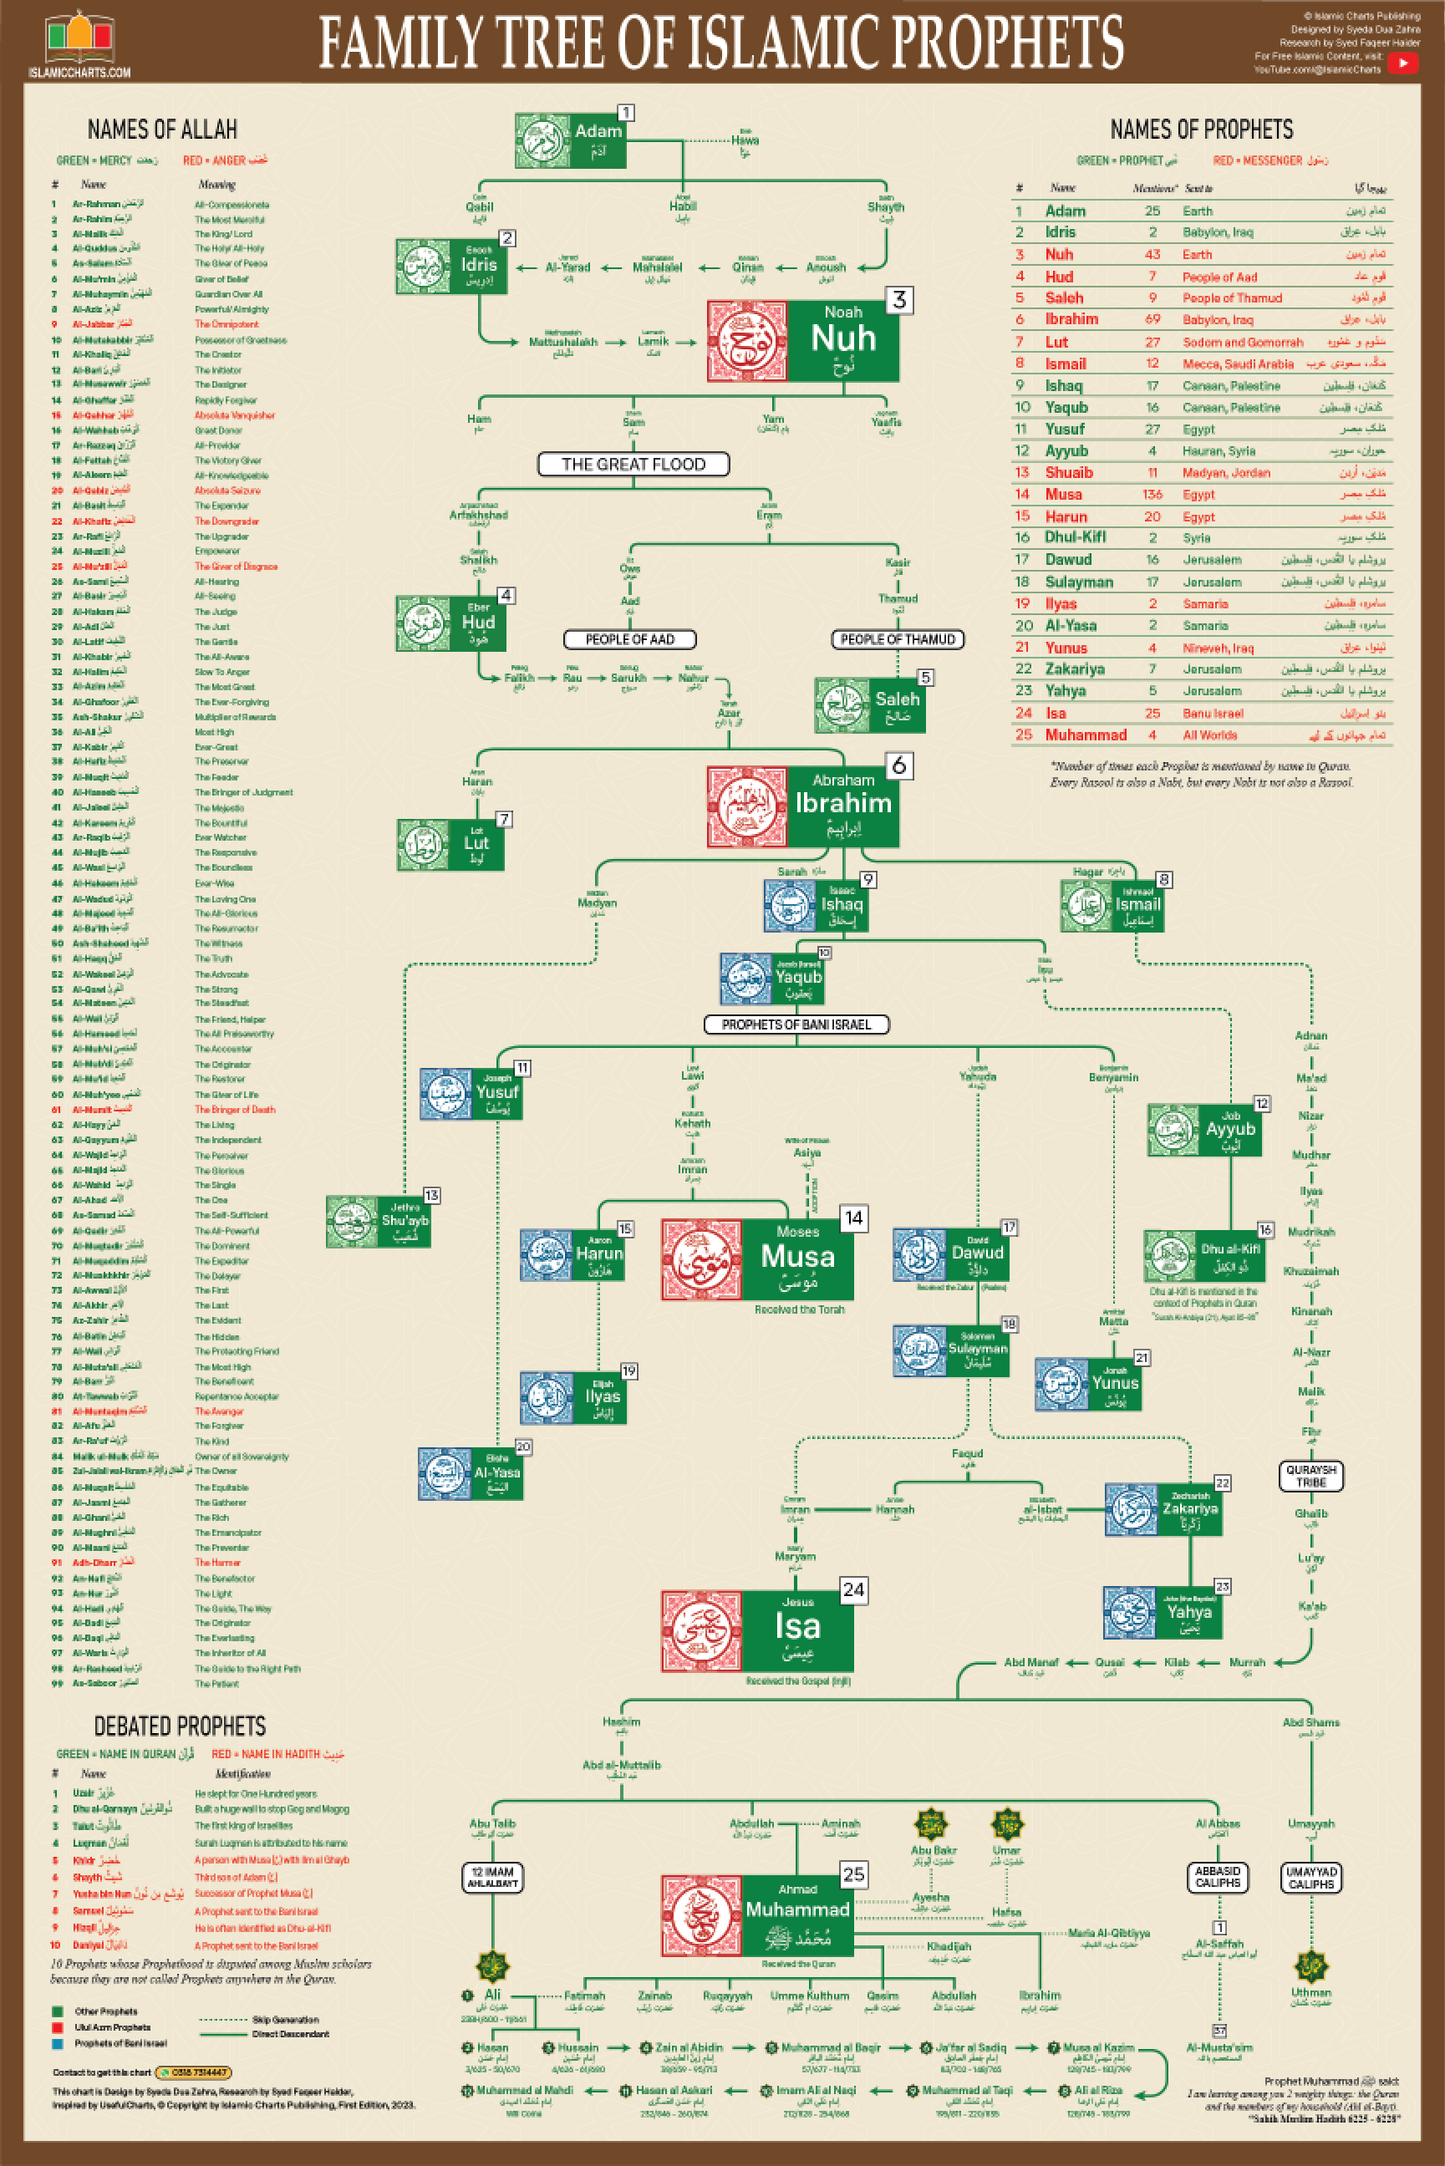 Family Tree of Islamic Prophets